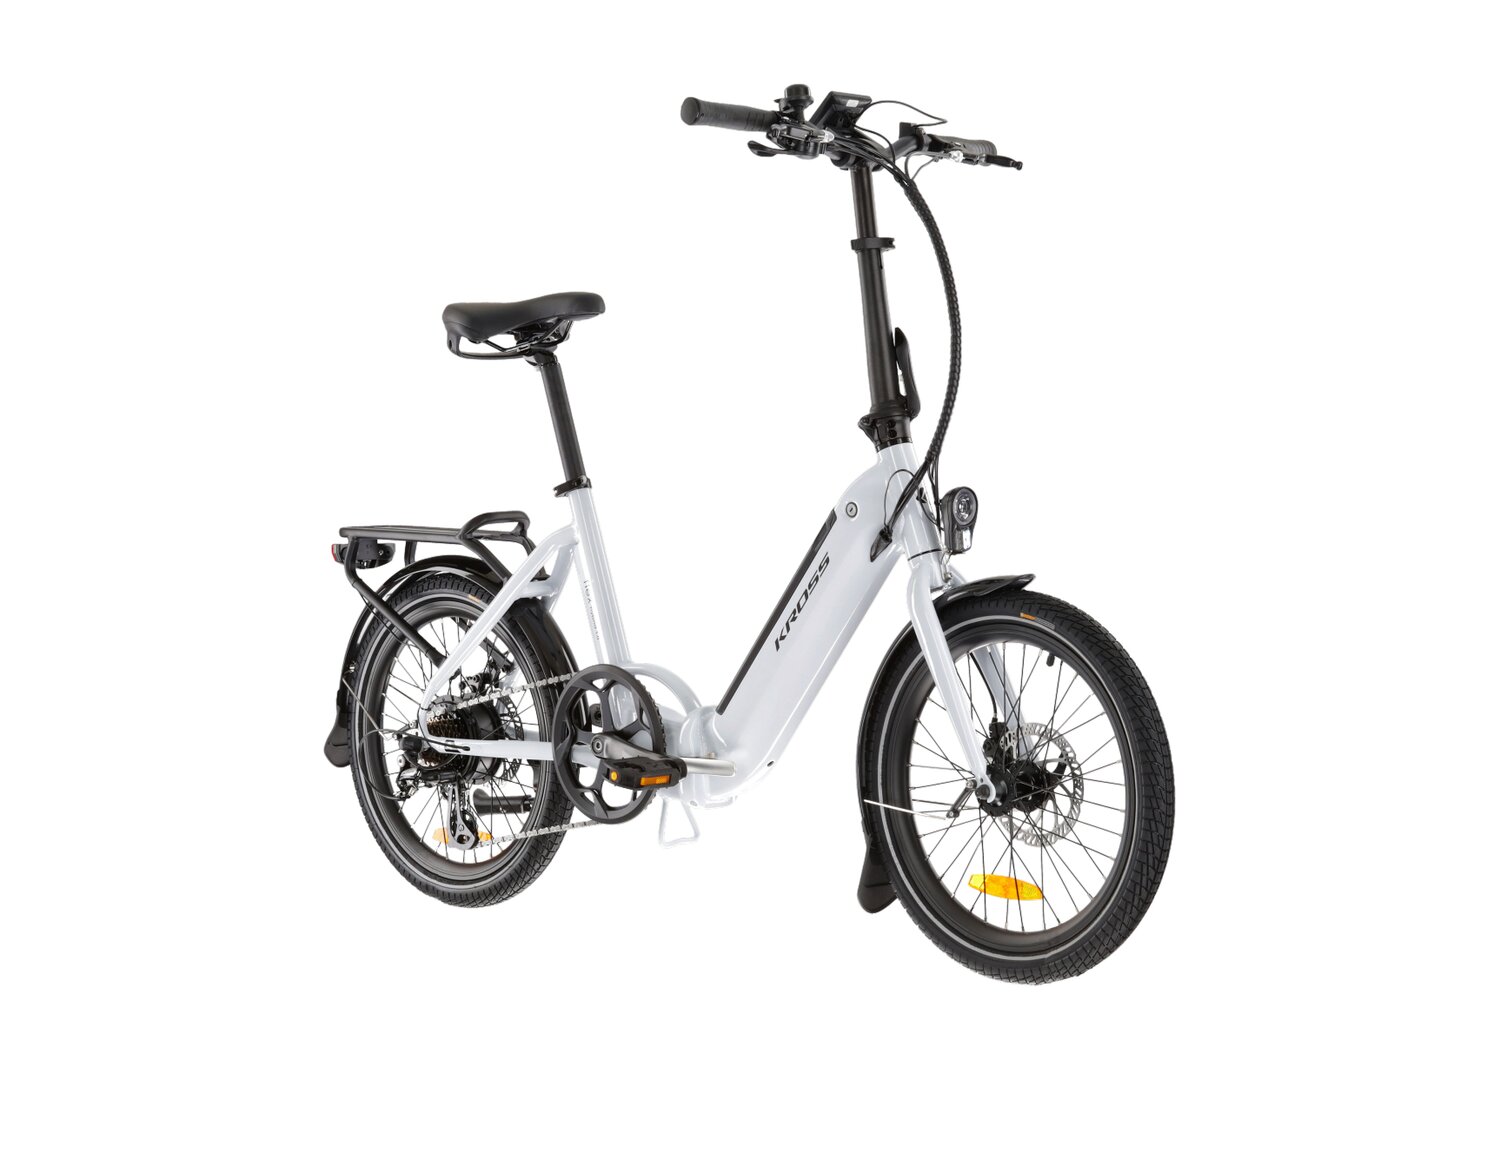  Elektryczny rower miejski Ebike City KROSS Flex Hybrid 1.0 367 Wh na aluminiowej ramie w kolorze perłowym wyposażony w osprzęt Shimano i napęd elektryczny Shengyi